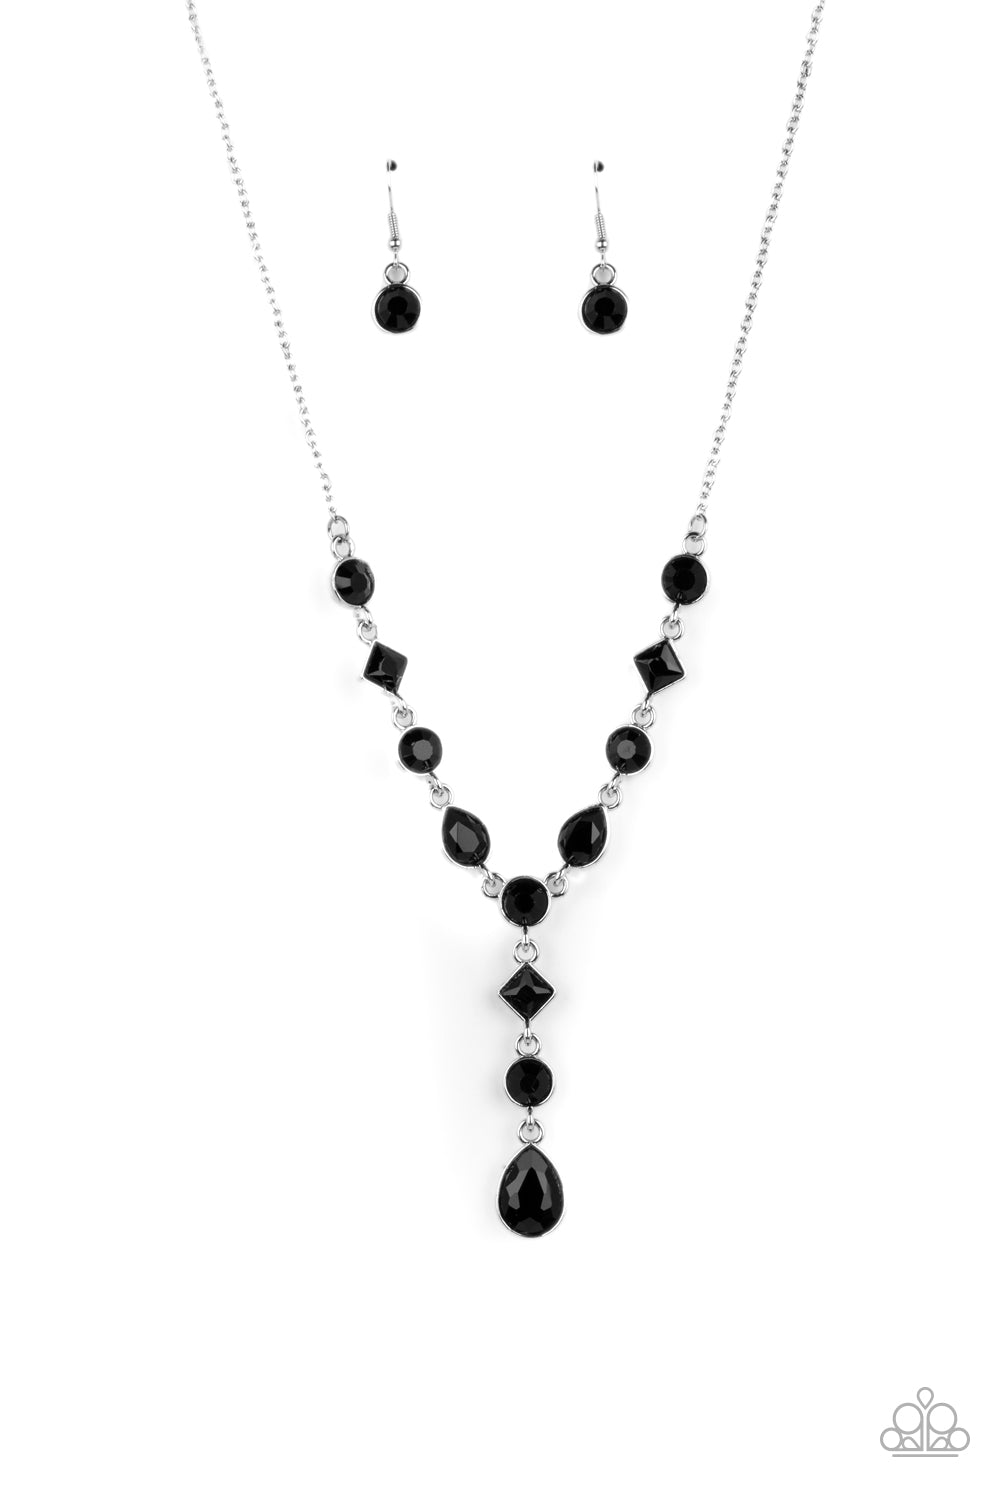 Black Rhinestone Crystal Gem Flower Pendant Body Chain Necklace Bikini  Jewelry | eBay